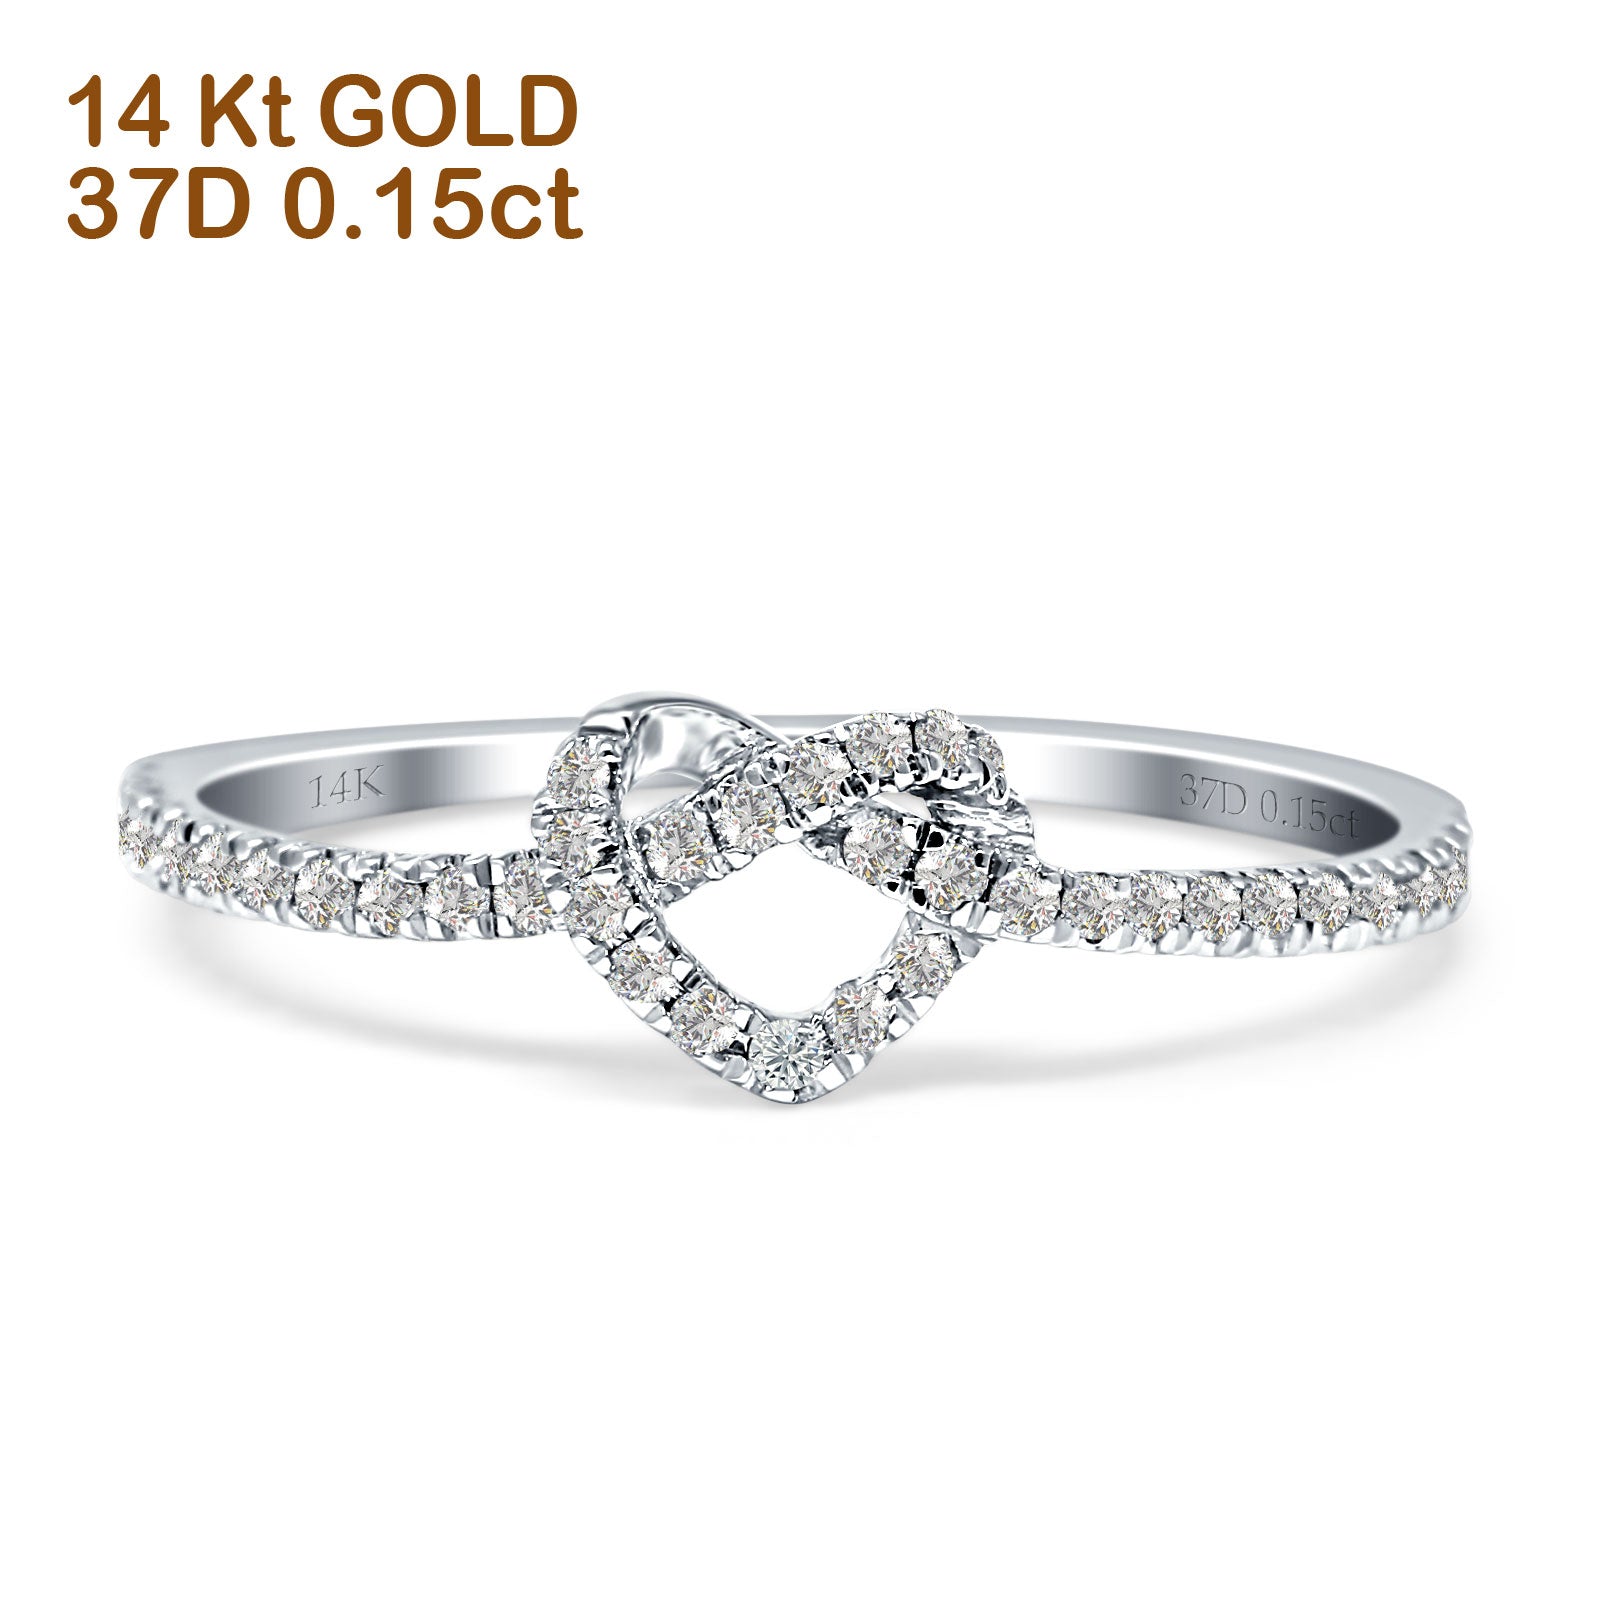 14k White Gold June Heart Ring - 1.0 Grams - Size 7.00 